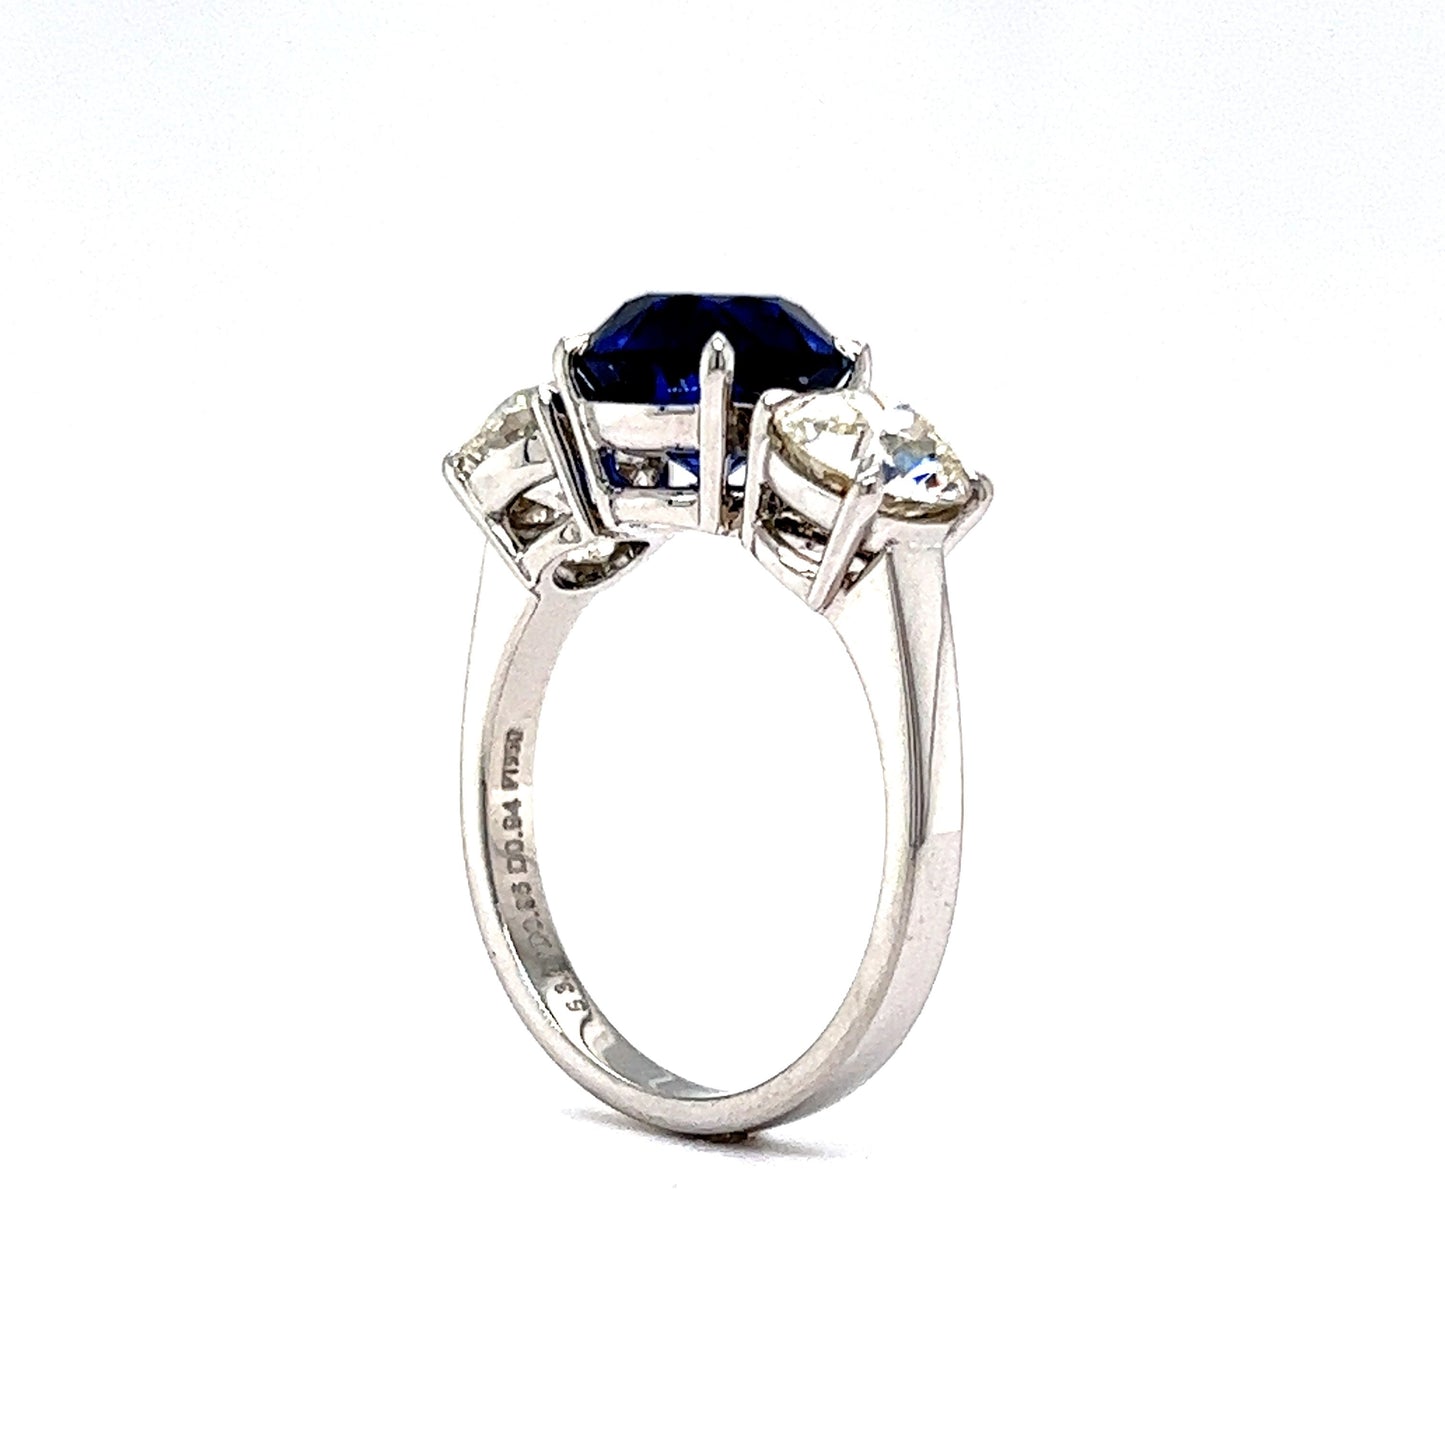 3.07 Sapphire & Diamond Three Stone Engagement Ring in Platinum